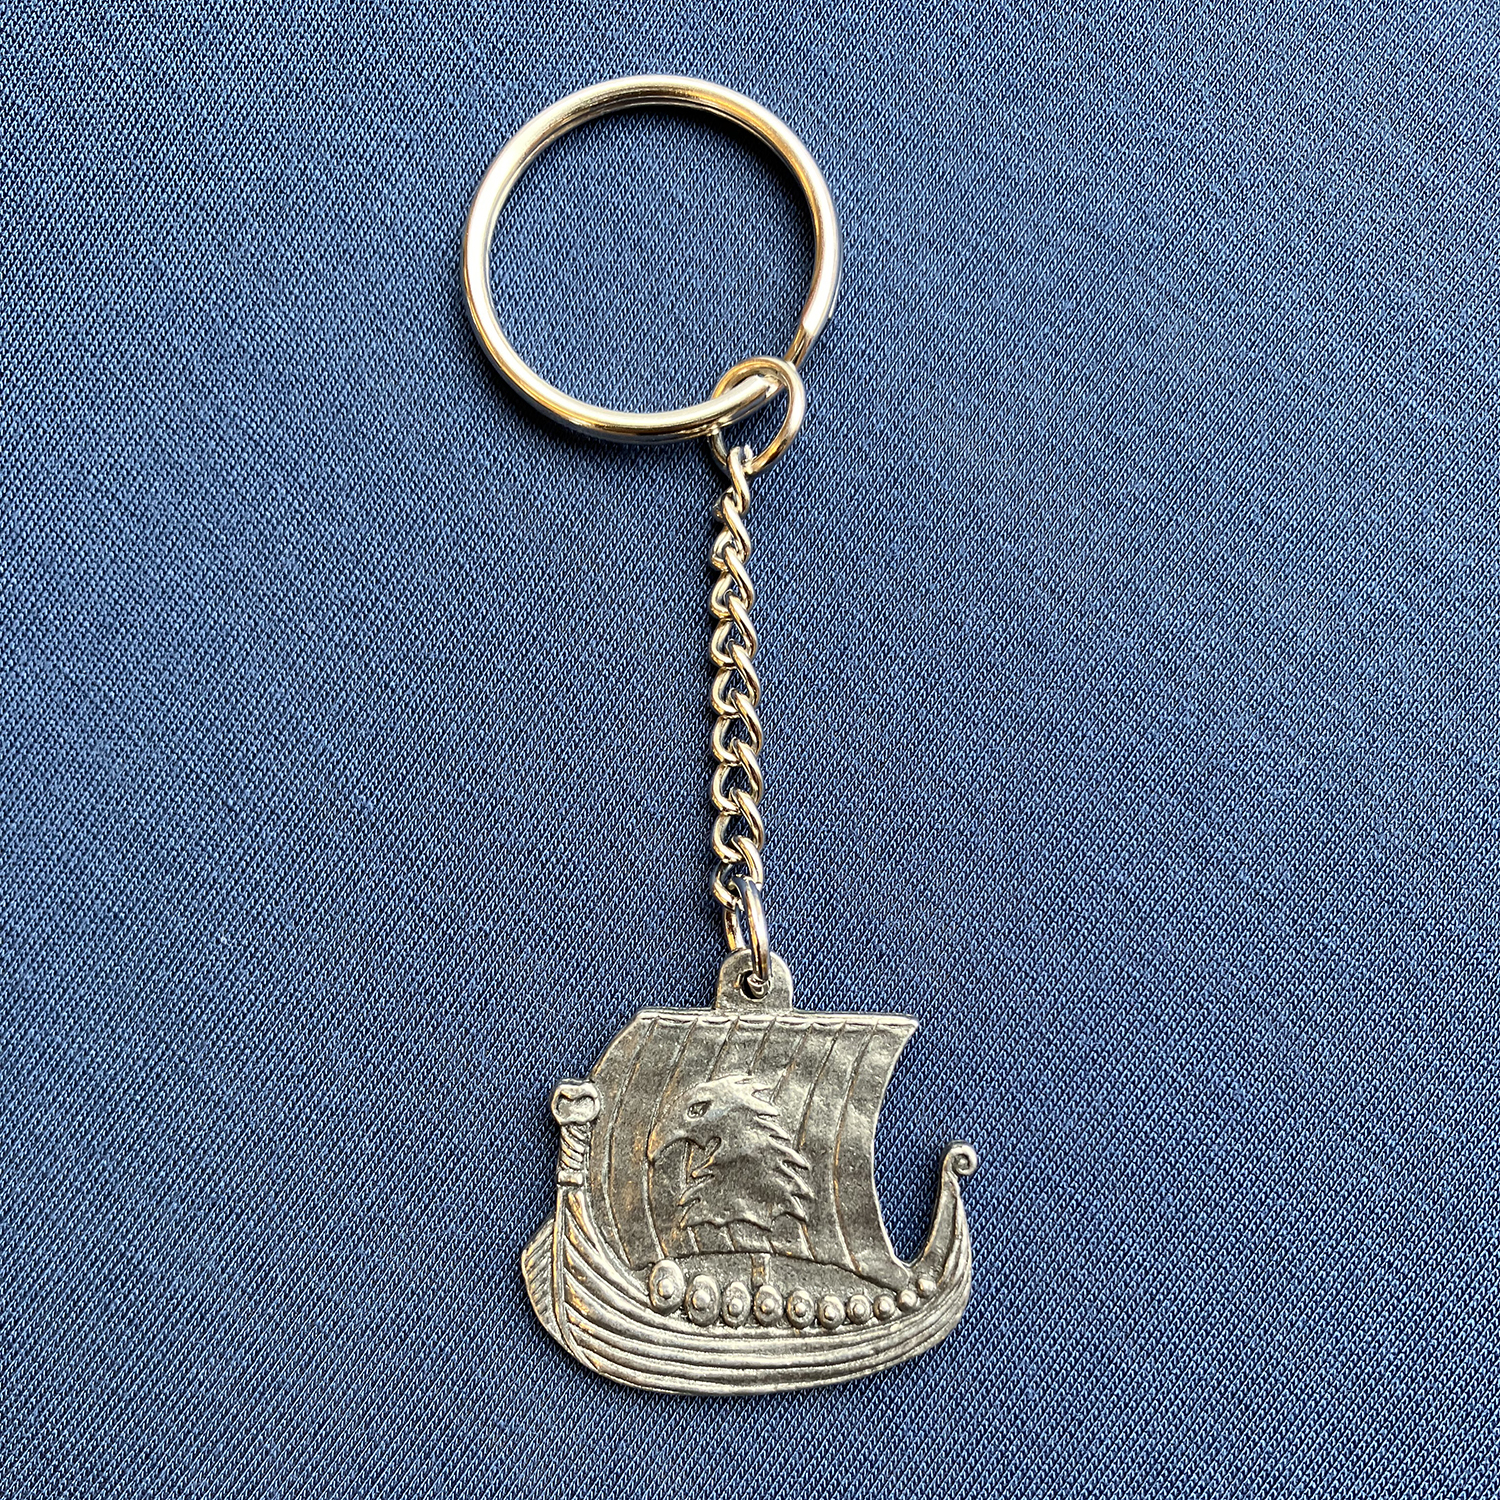 Key ring in Pewter, Viking ship